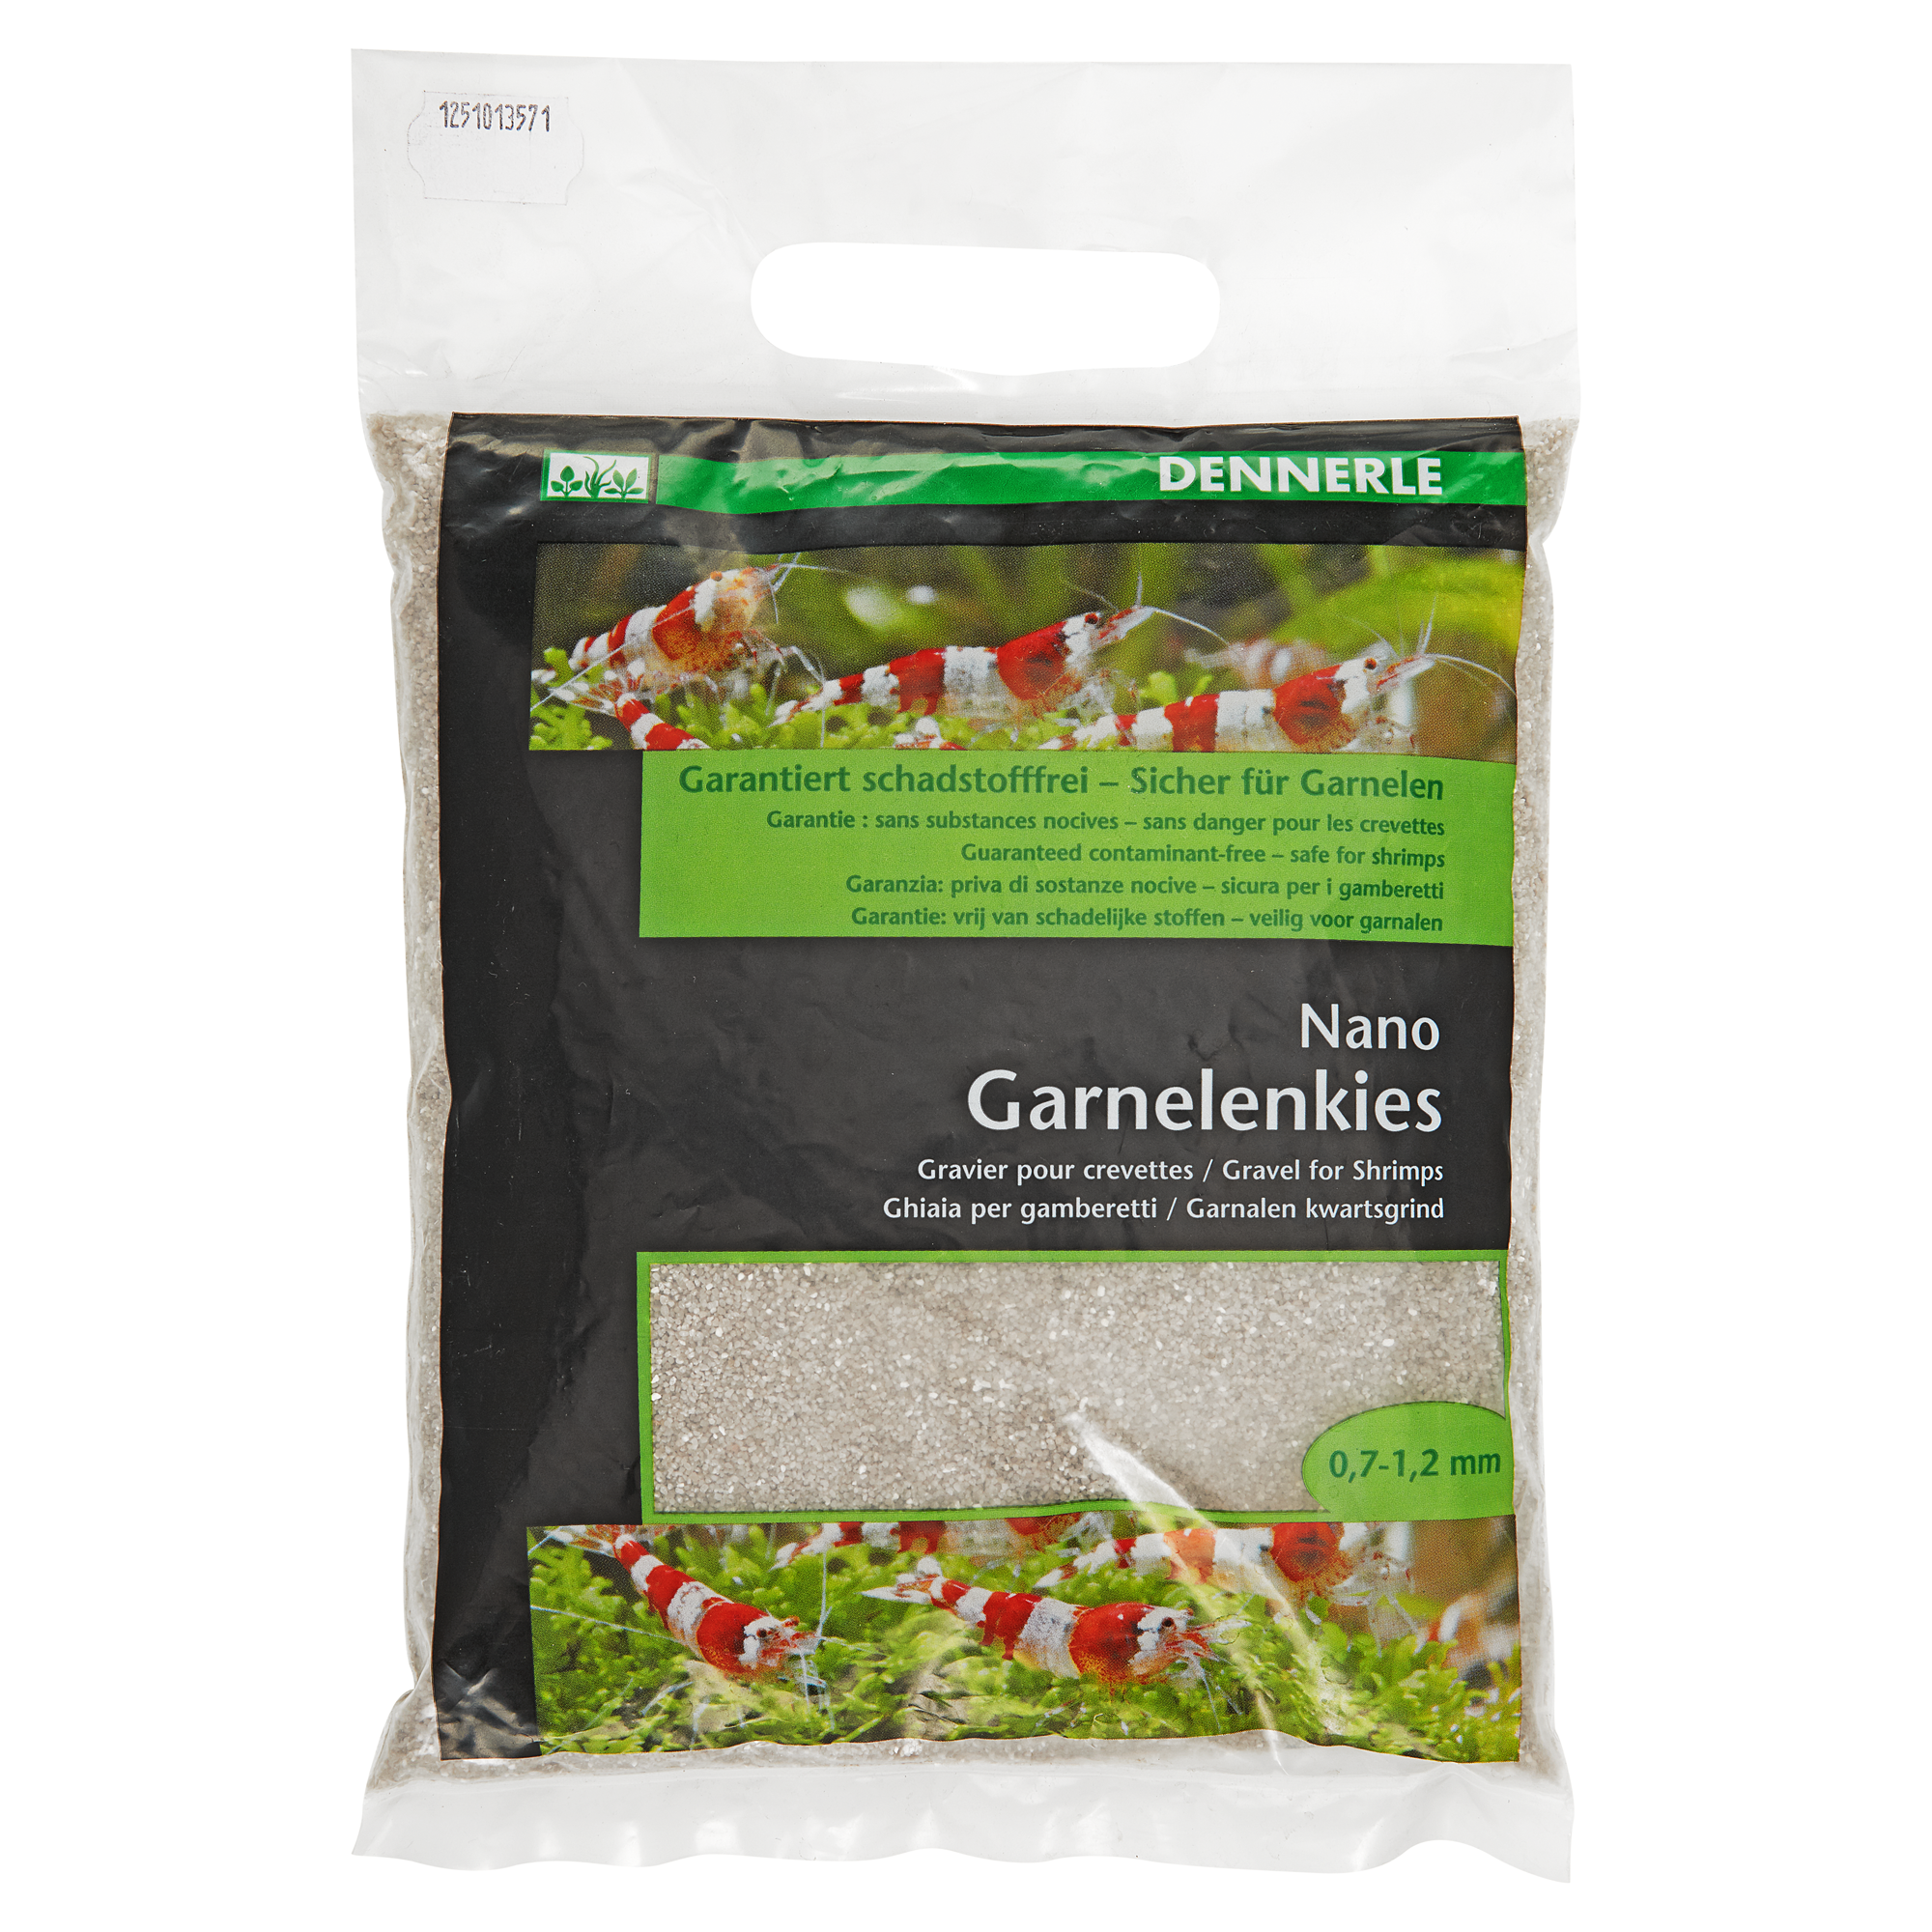 Nano-Garnelenkies sunda weiß 2 kg + product picture